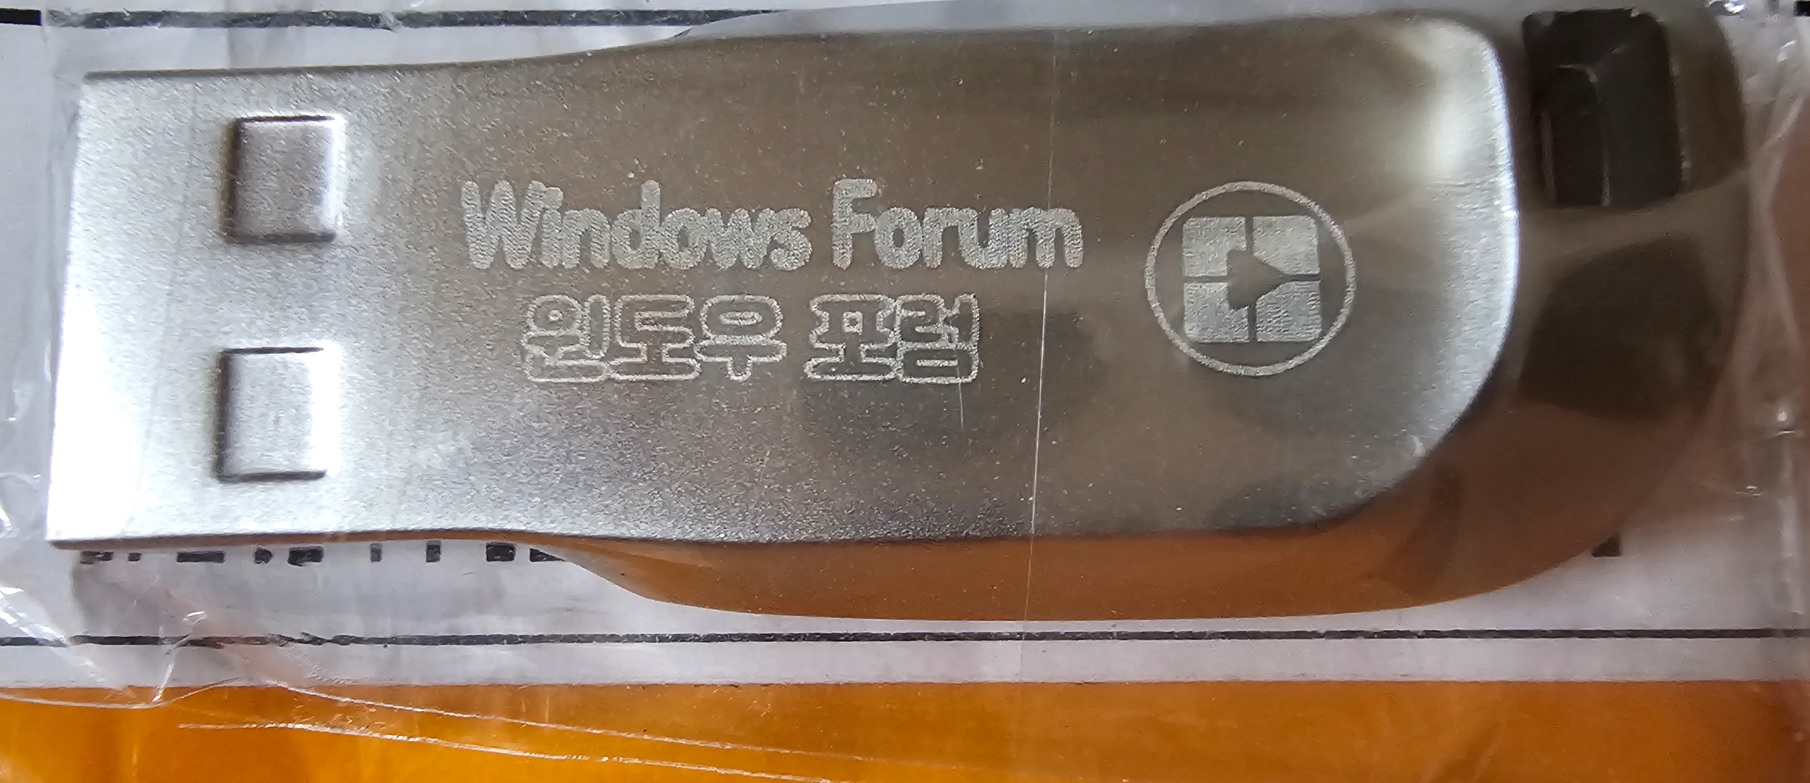 WindowsForum_USB.jpg